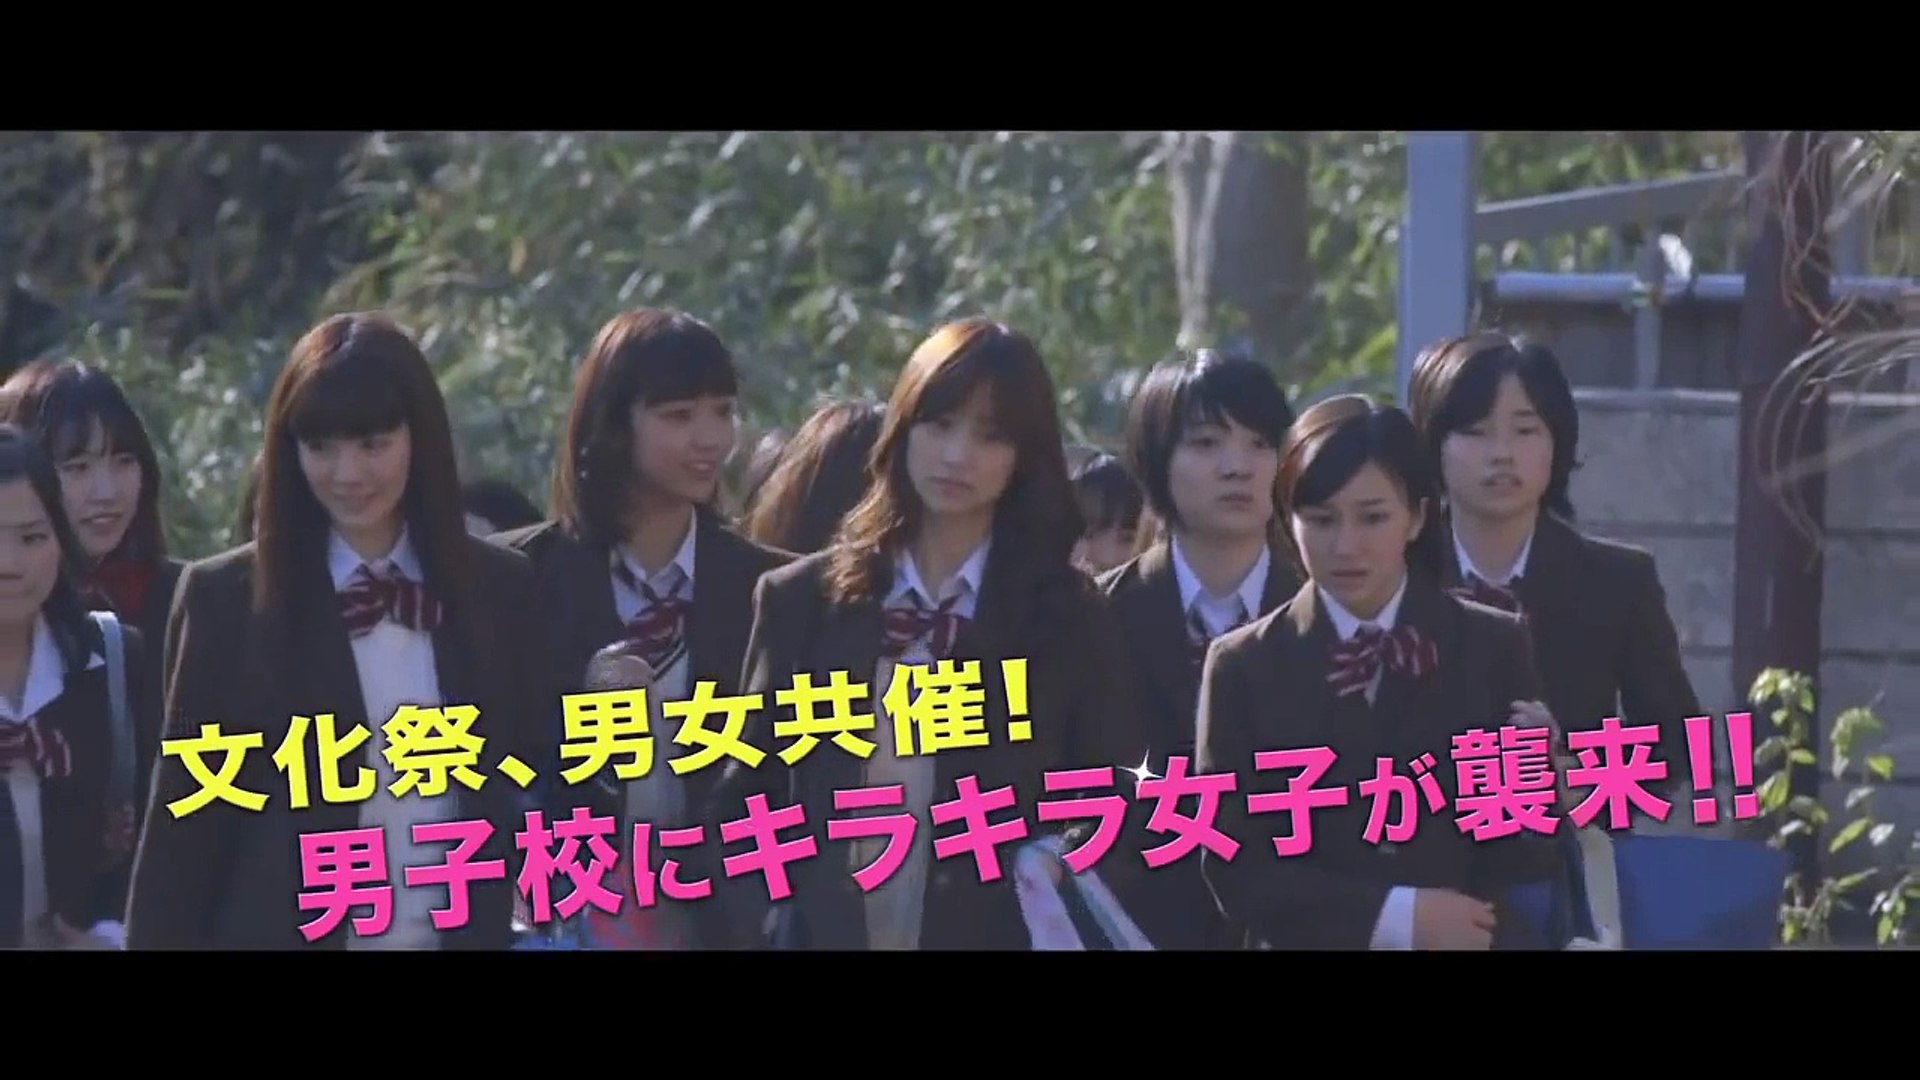 Danshi Koukousei No Nichijou Live Action Official Trailer Video Dailymotion